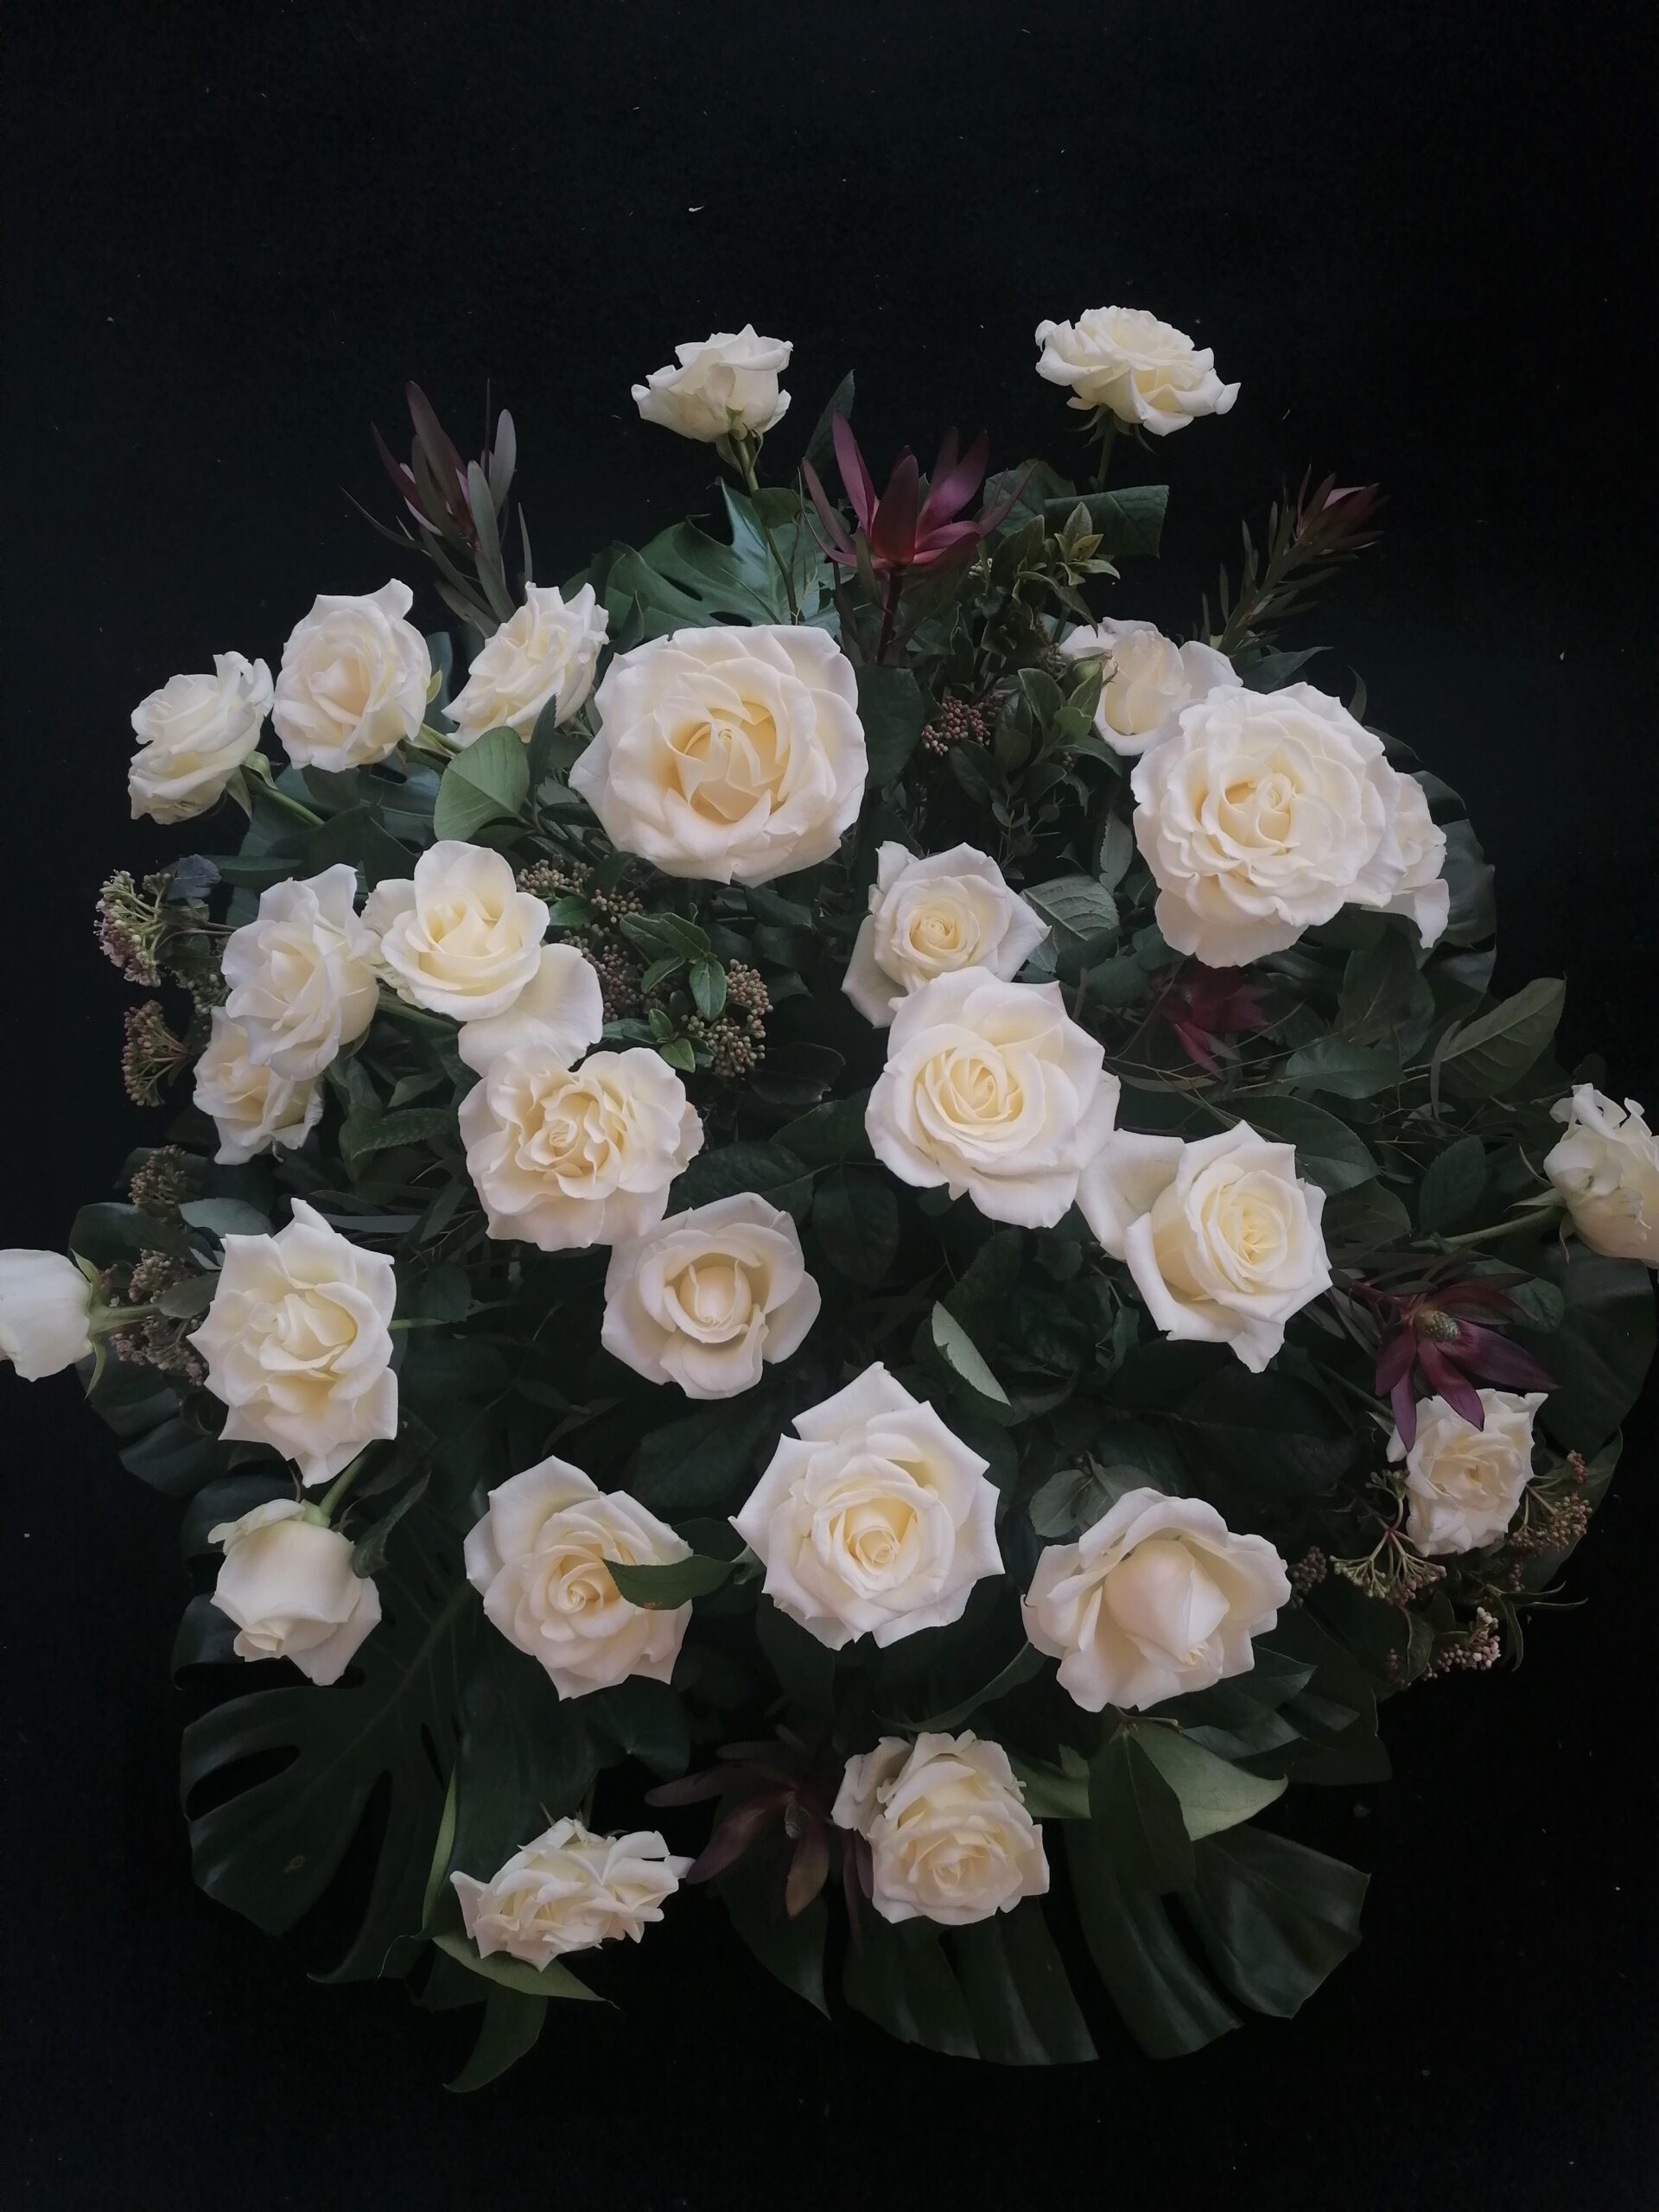 Przełamanie kolorystyczne bieli stanowi leukadendron - towarzysz róż oraz duża ilość zieleni.